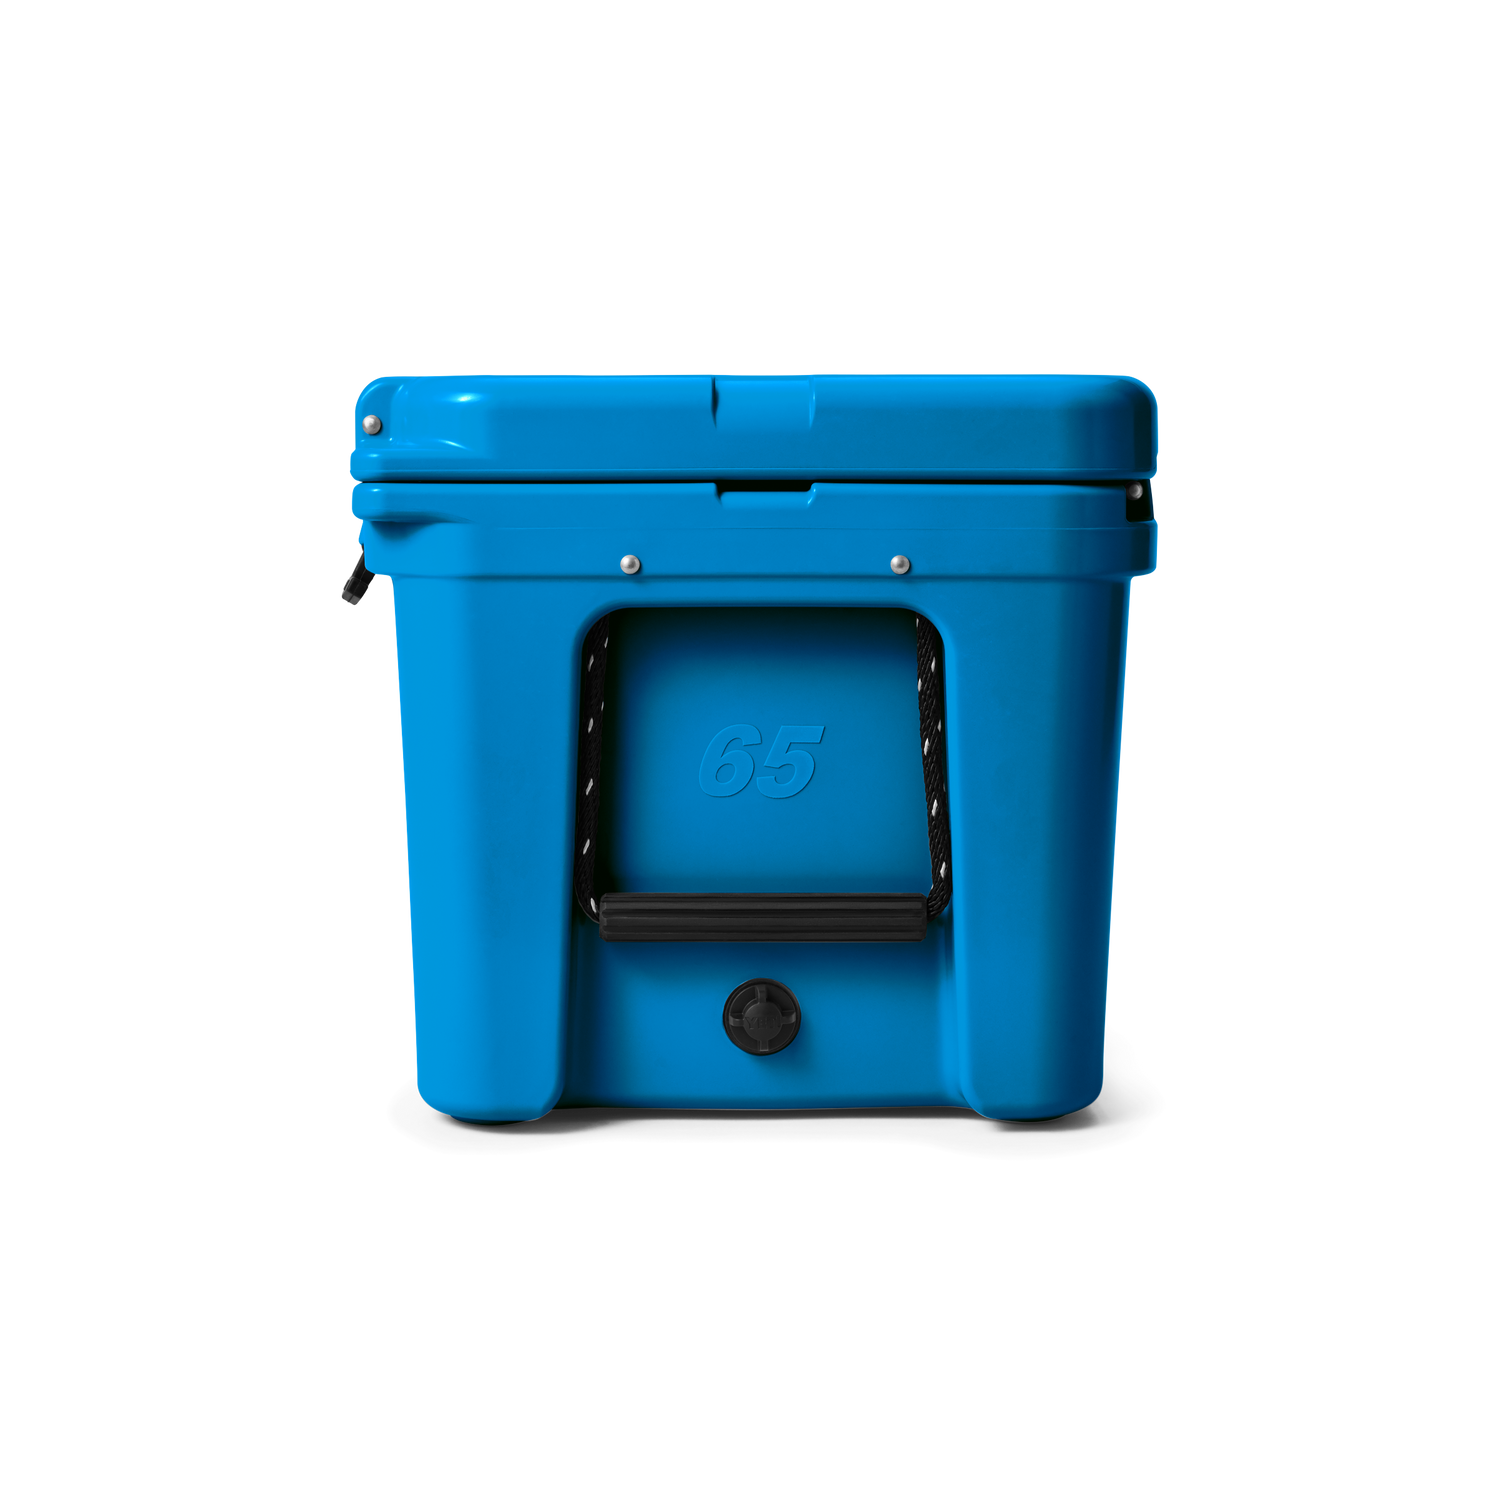 YETI Tundra® 65 Cool Box Big Wave Blue